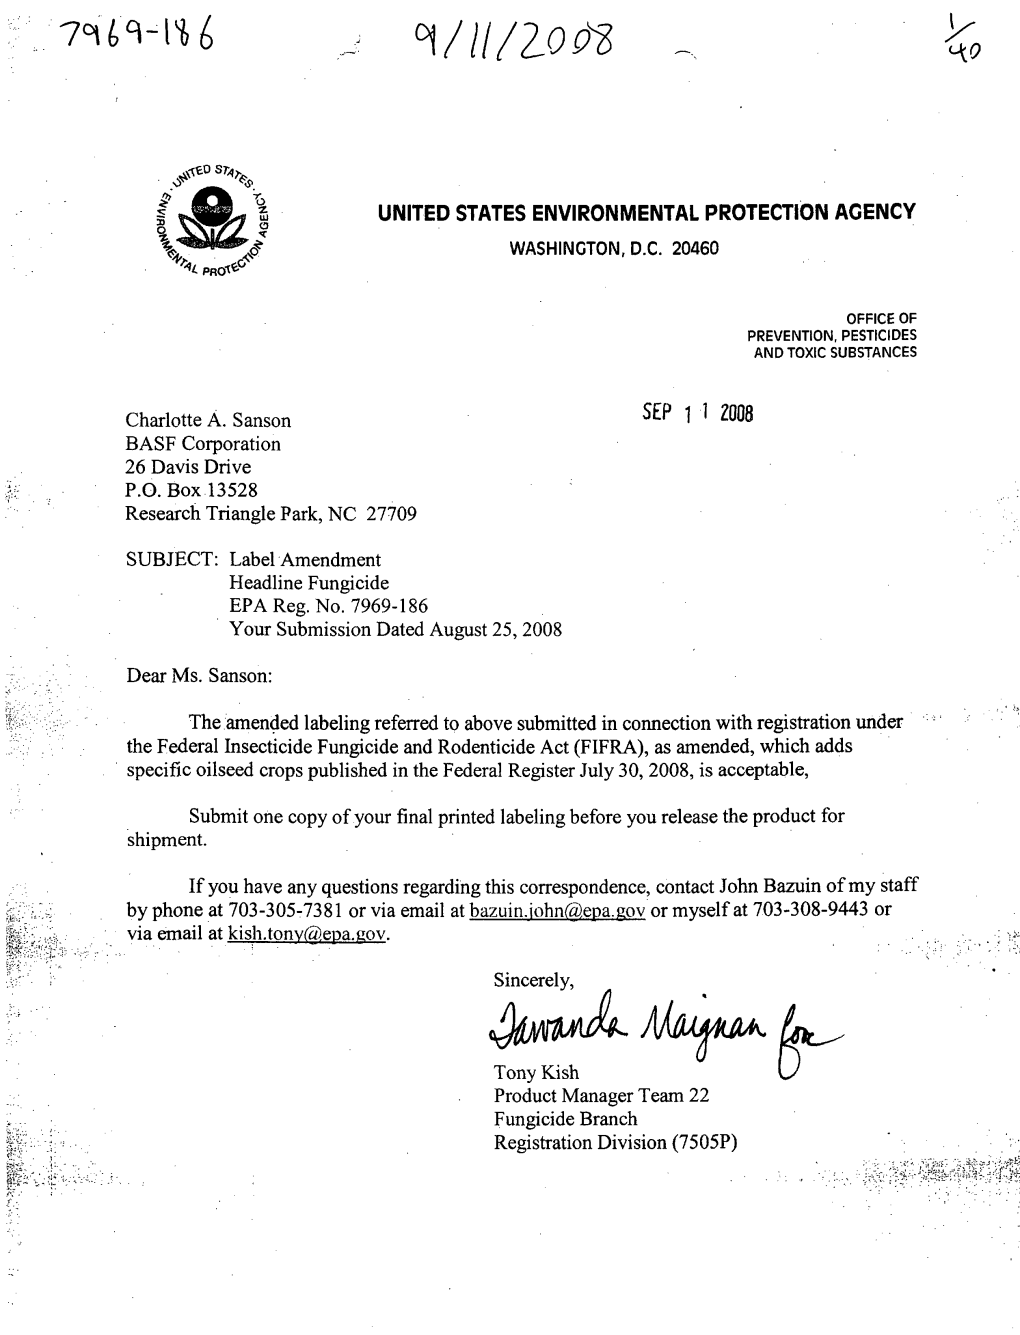 U.S. EPA, Pesticide Product Label, HEADLINE FUNGICIDE, 09/11/2008